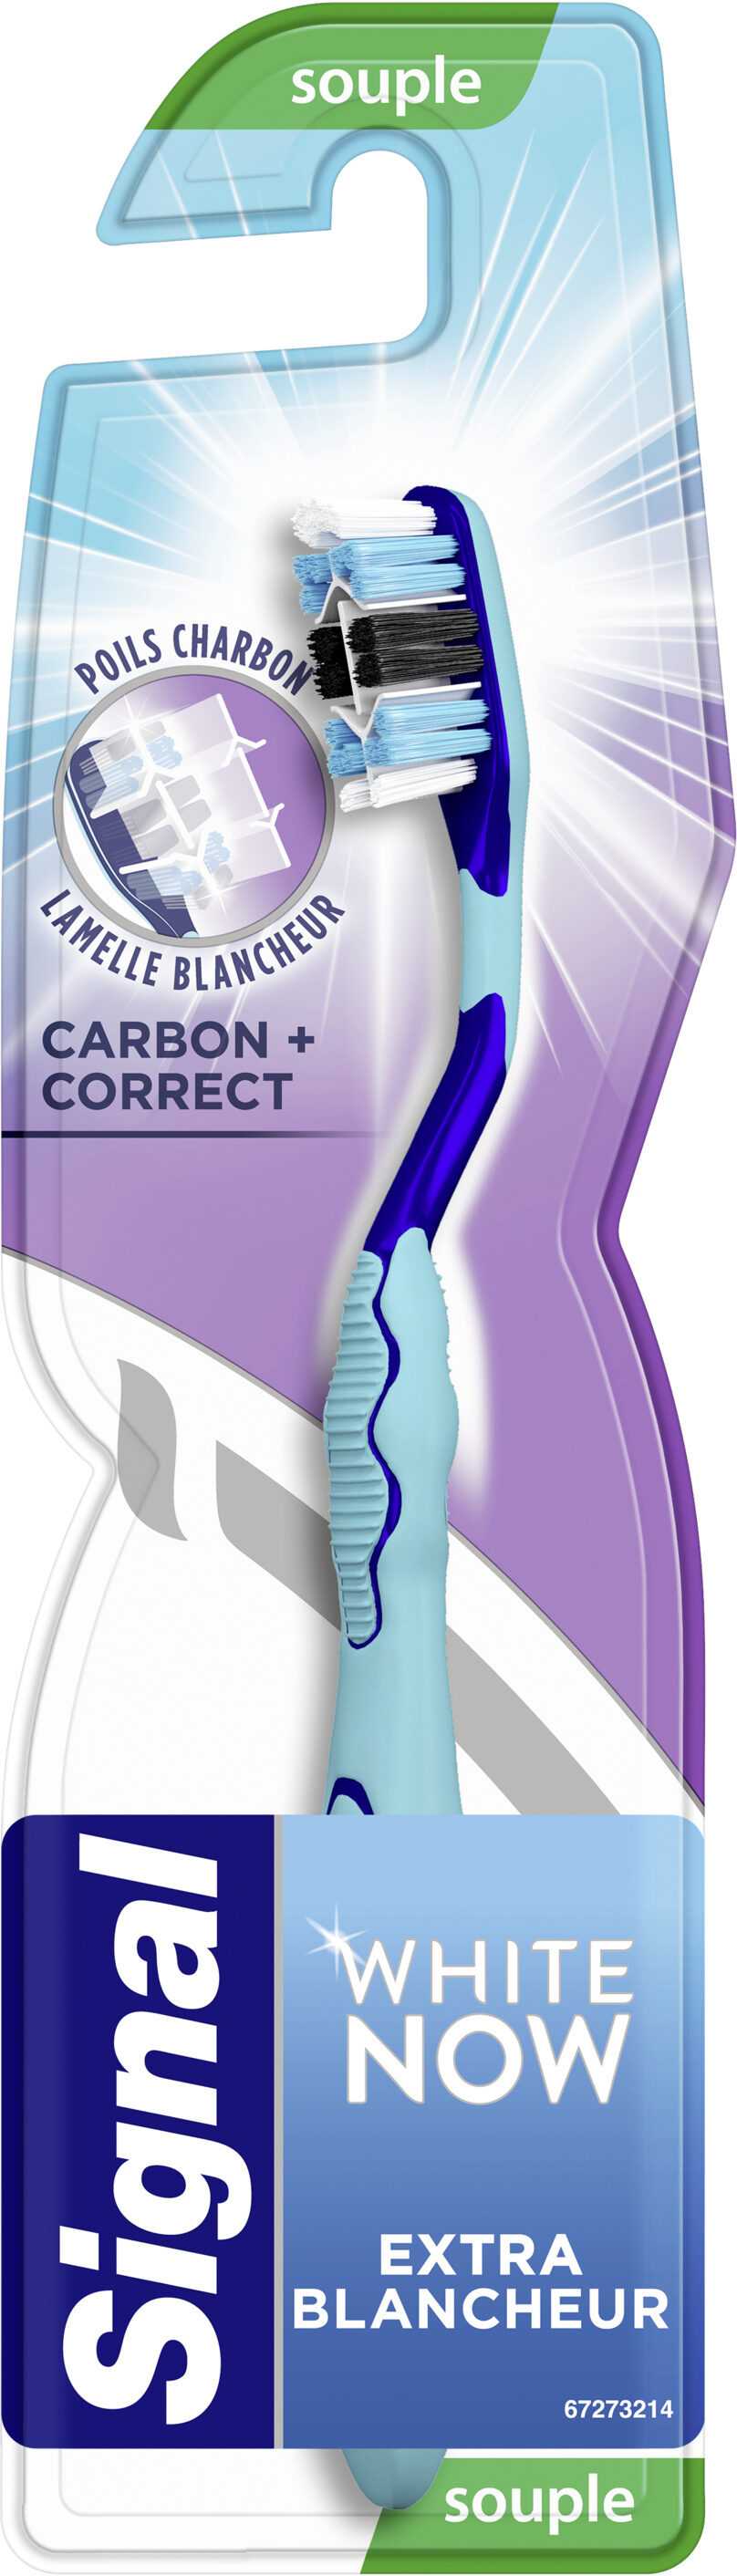 Signal White Now Brosse à Dents Carbon Correct Souple x1 - Product - fr